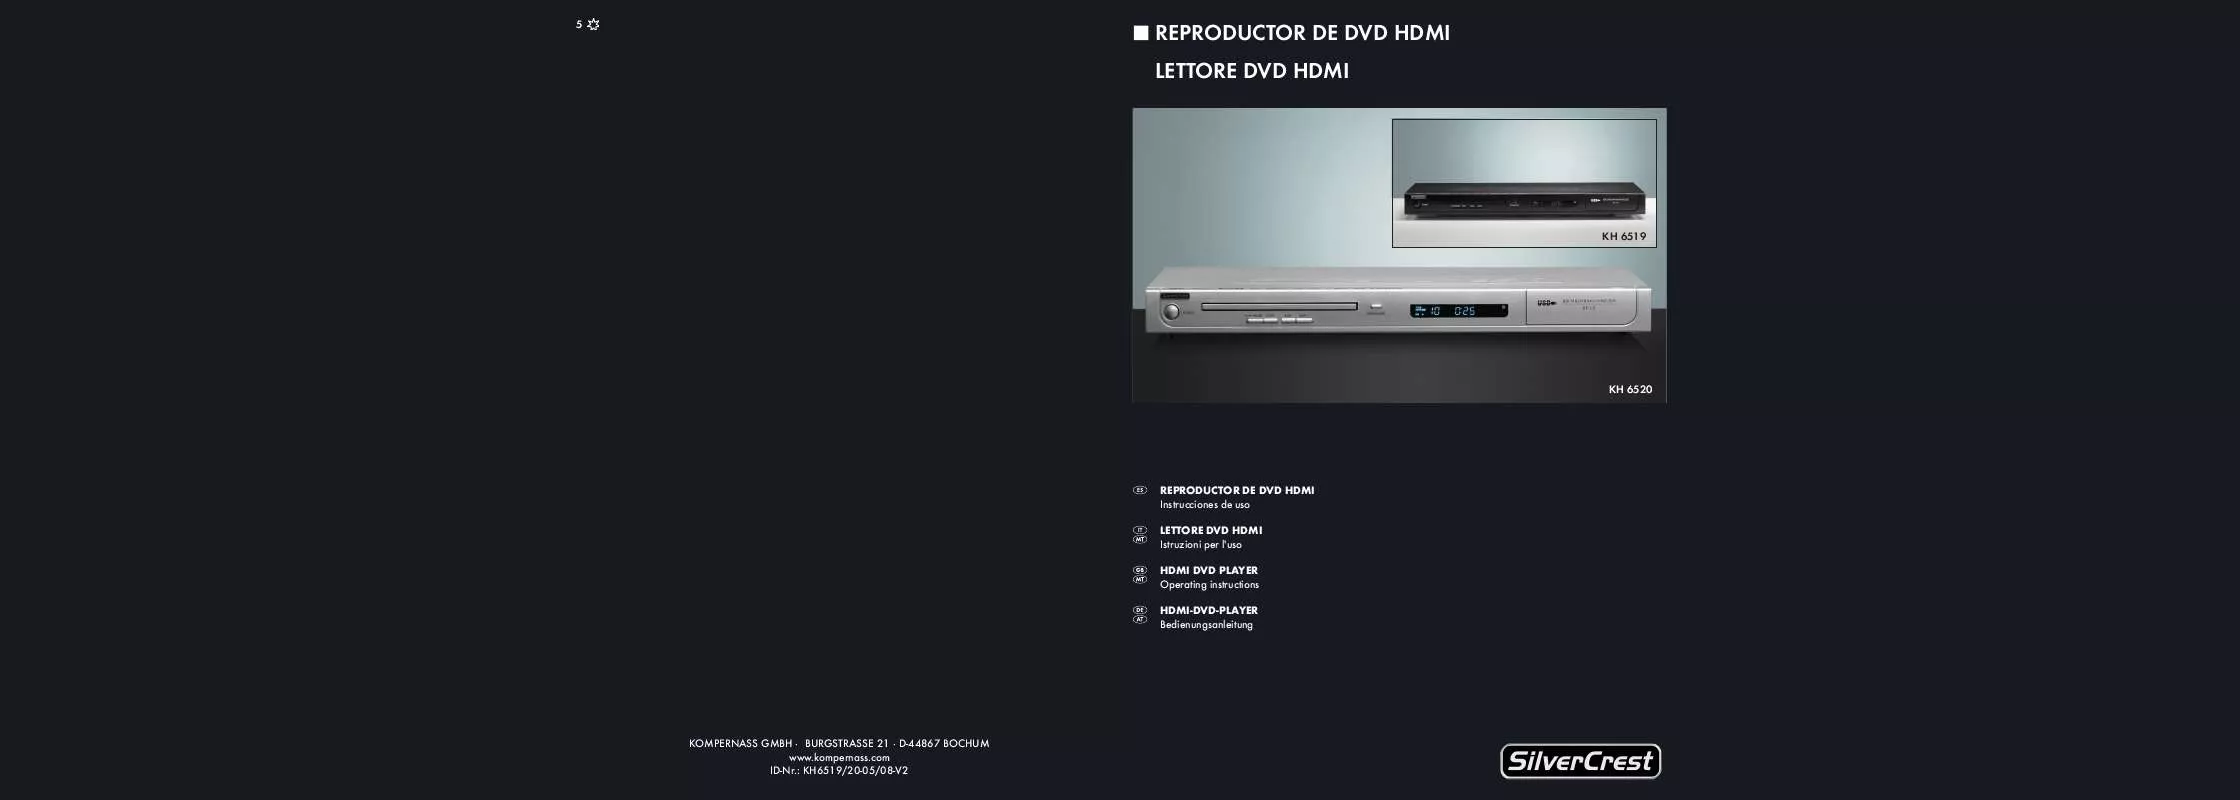 Mode d'emploi SILVERCREST KH 6520 HDMI DVD-PLAYER